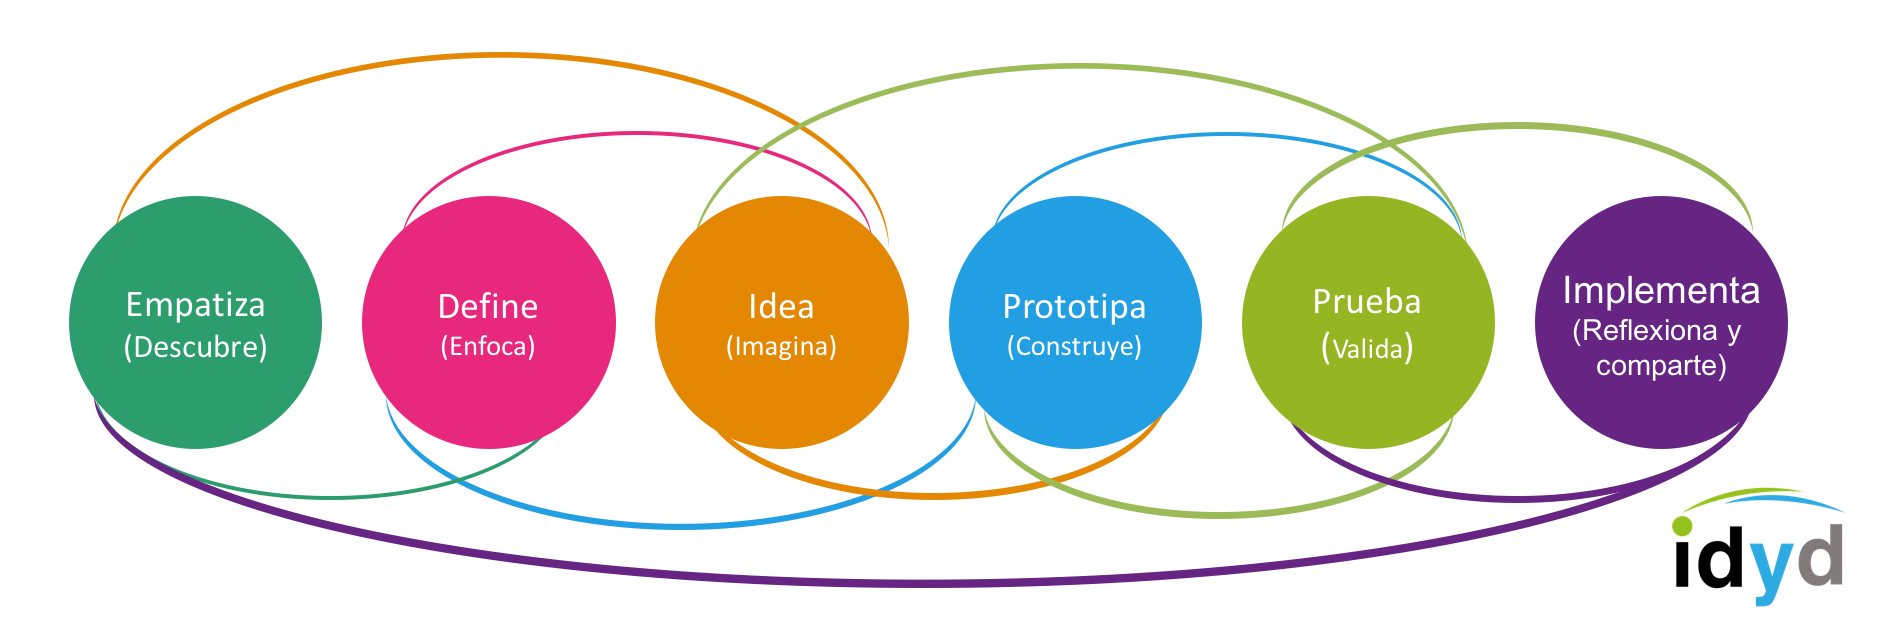 Qué es el diagrama horizontal de design thinking